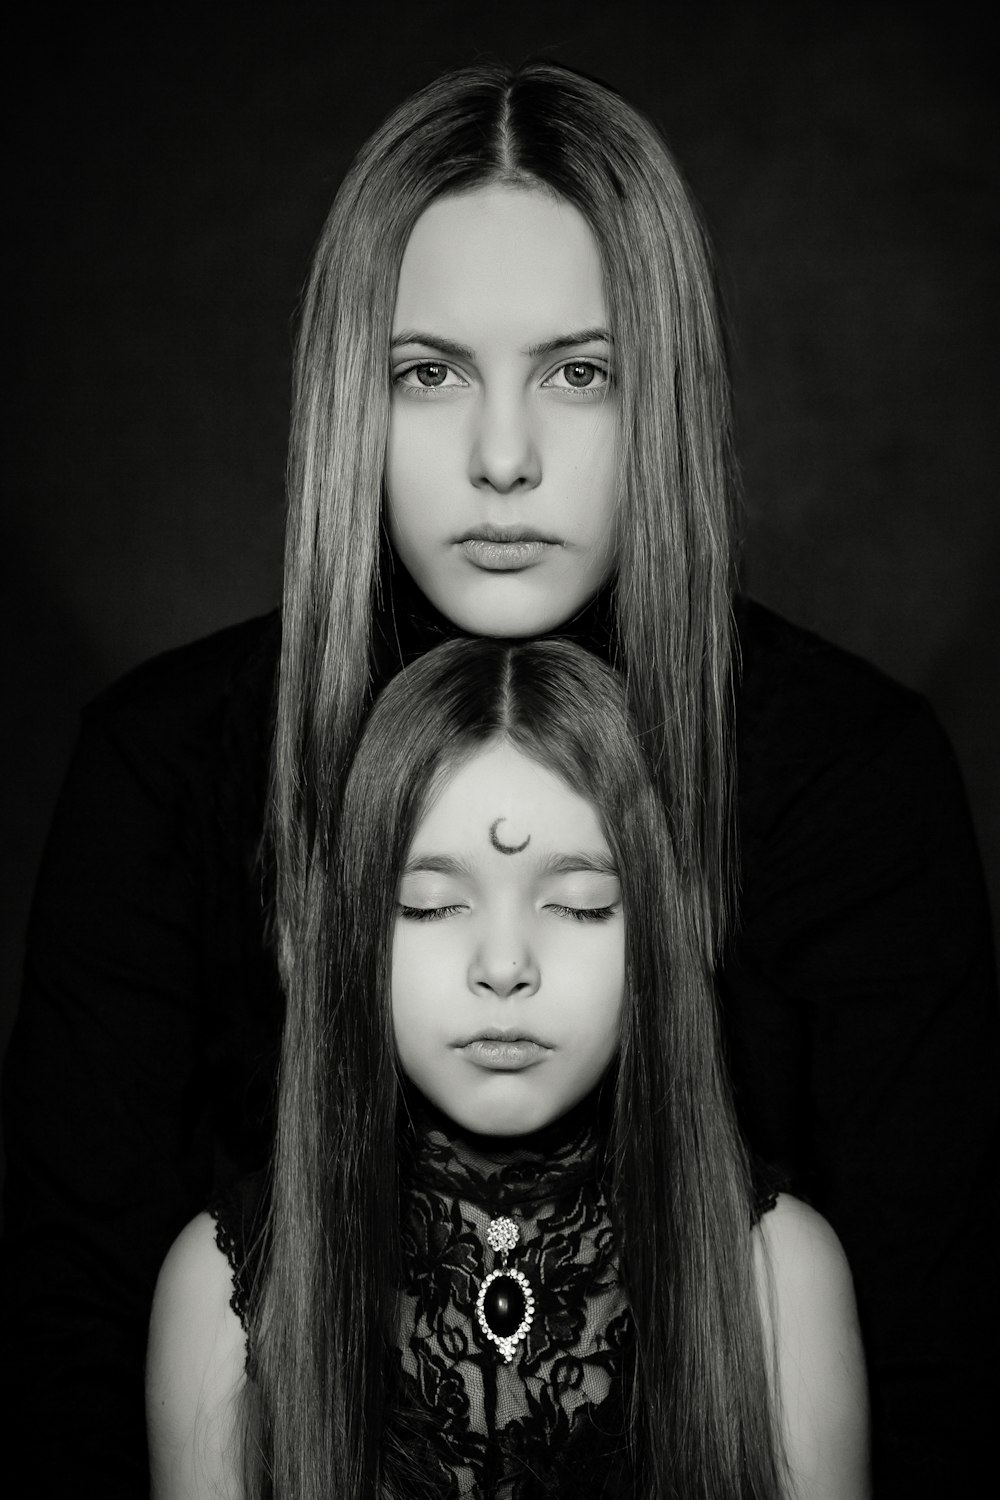 fotografía en escala de grises de dos mujeres